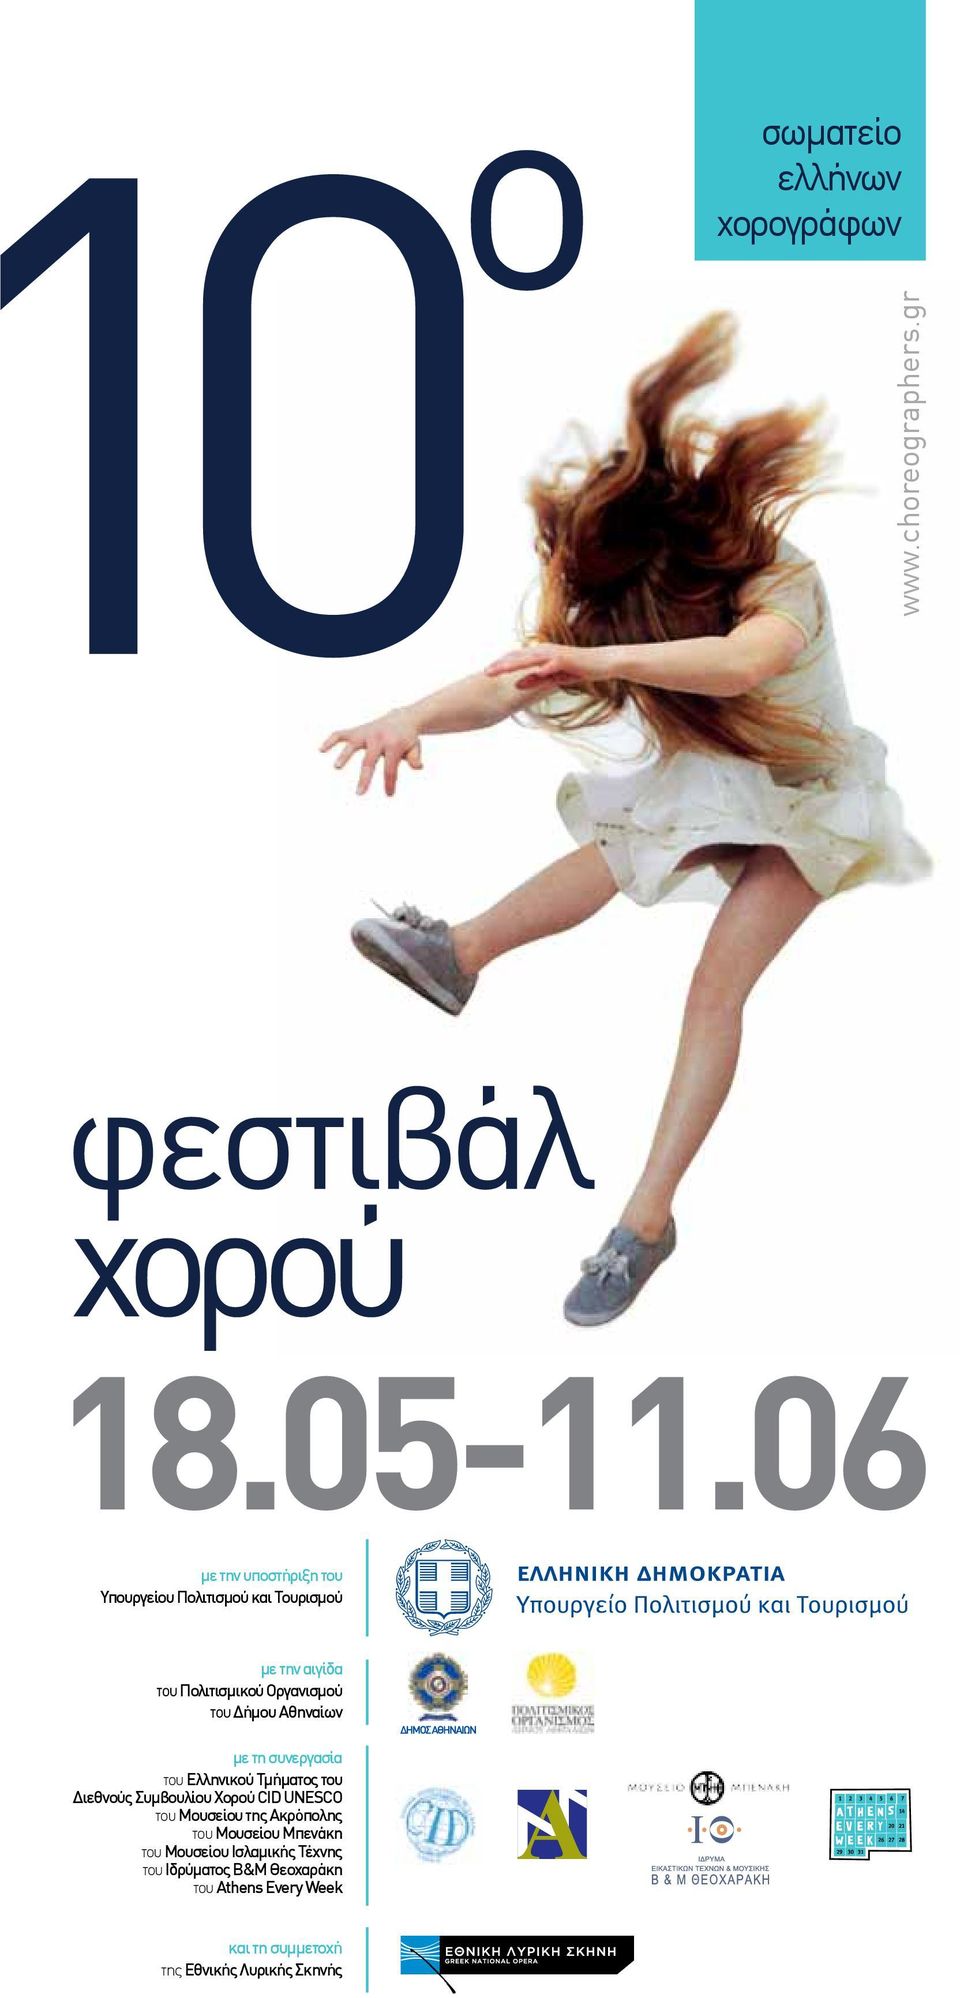 του Δήμου Αθηναίων με τη συνεργασία του Eλληνικού Τμήματος του Διεθνούς Συμβουλίου Χορού CID UNESCO του